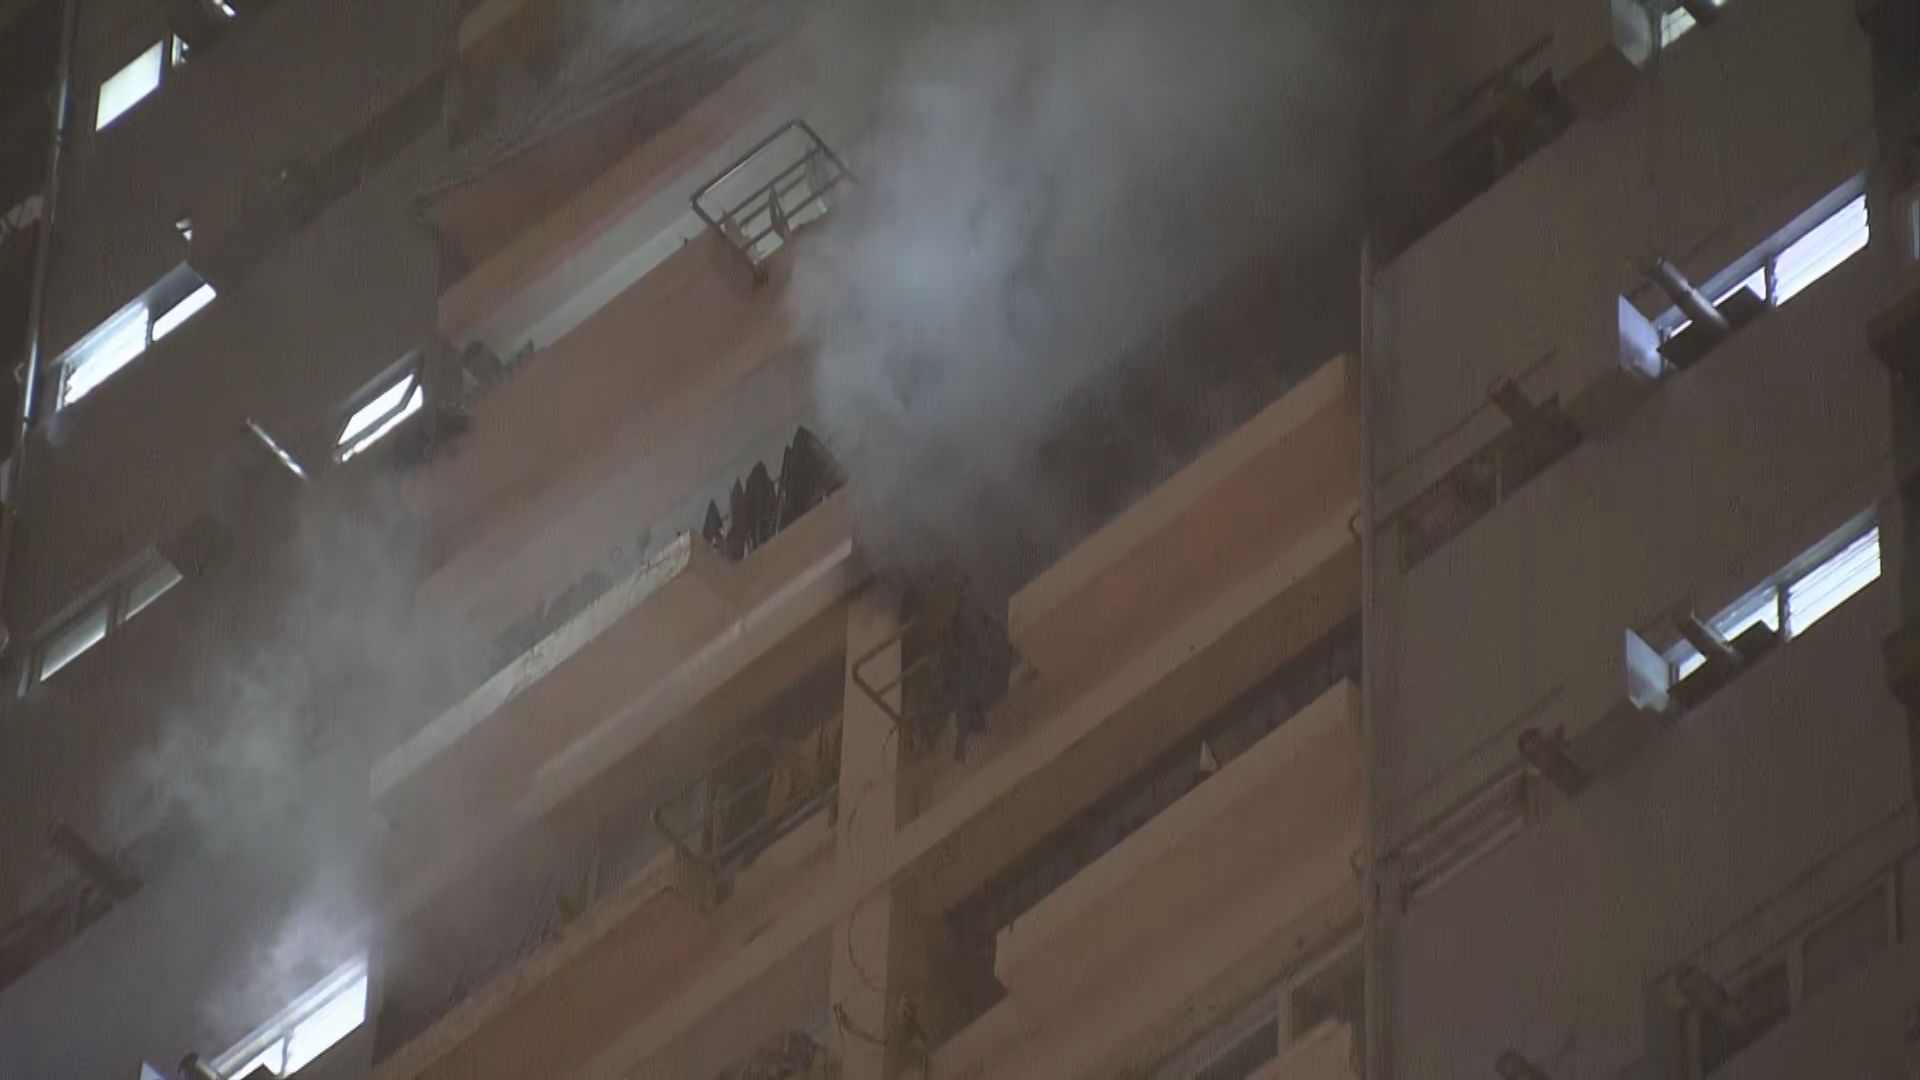 勵德邨單位火警 消防屋內發現燒焦屍體